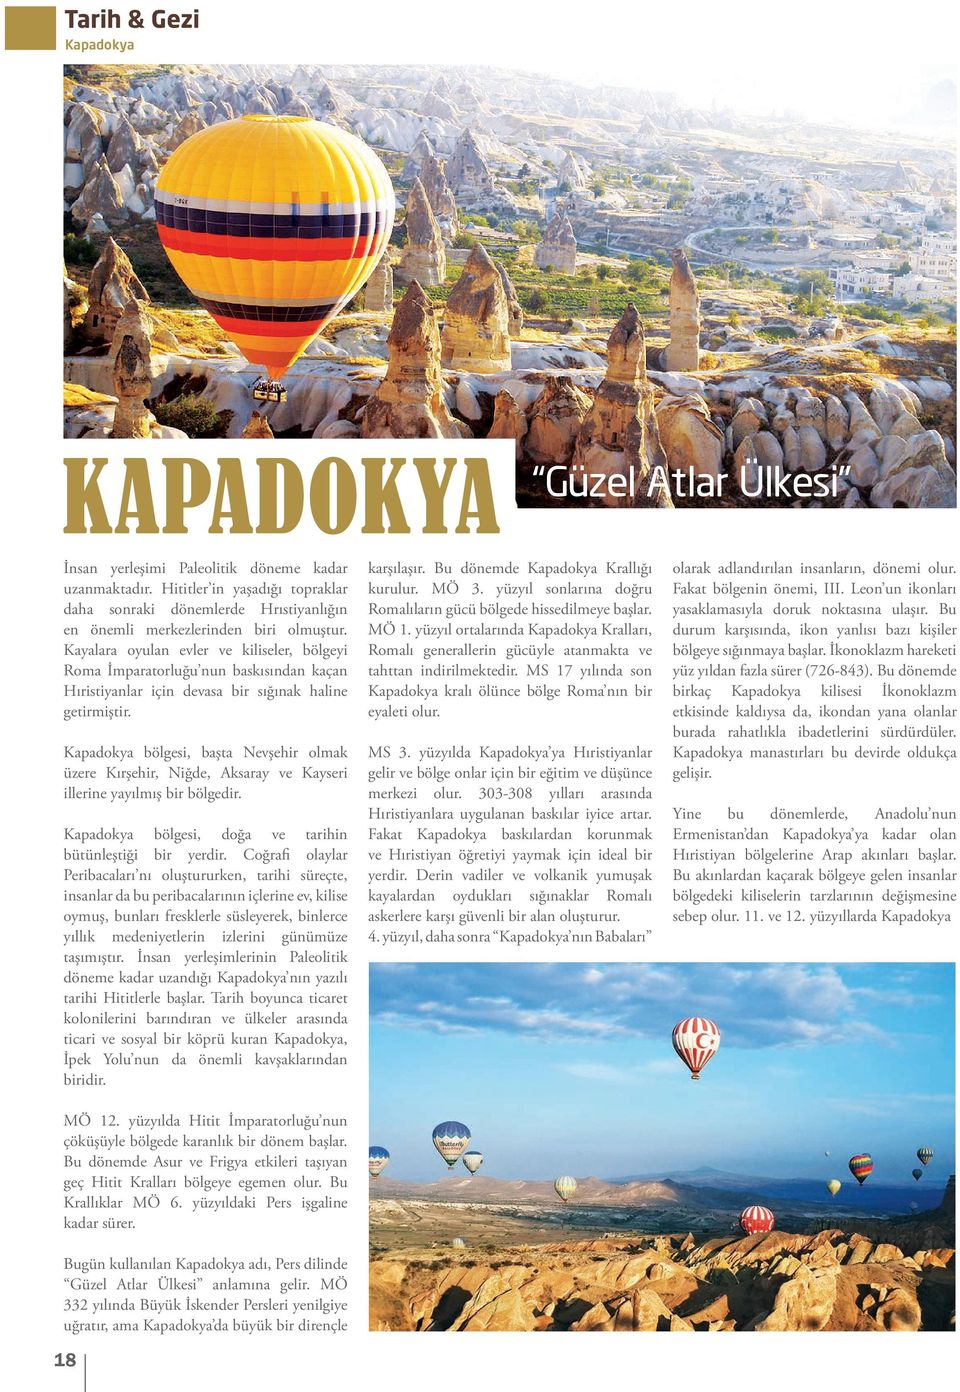 Kapadokya bölgesi, başta Nevşehir olmak üzere Kırşehir, Niğde, Aksaray ve Kayseri illerine yayılmış bir bölgedir. Kapadokya bölgesi, doğa ve tarihin bütünleştiği bir yerdir.